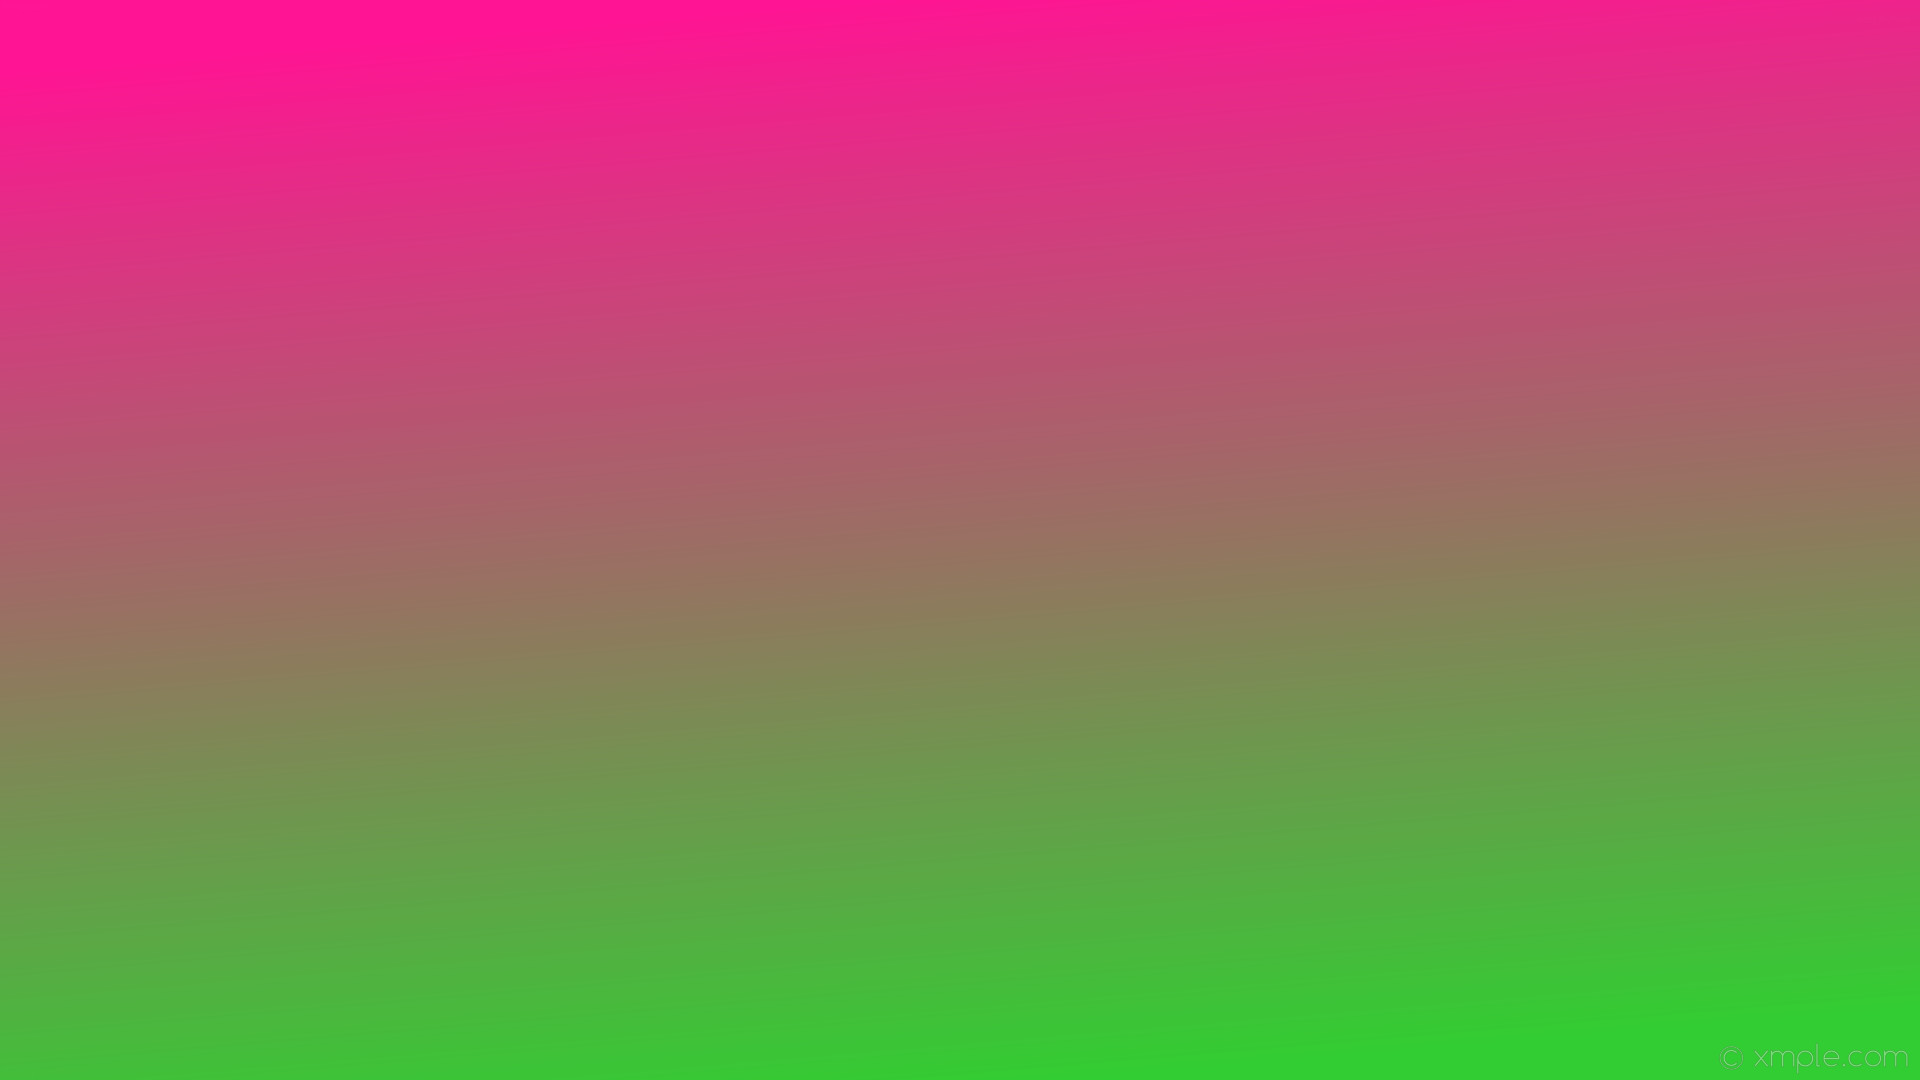 1920x1080 wallpaper gradient green linear pink deep pink lime green #ff1493 #32cd32  105Â°